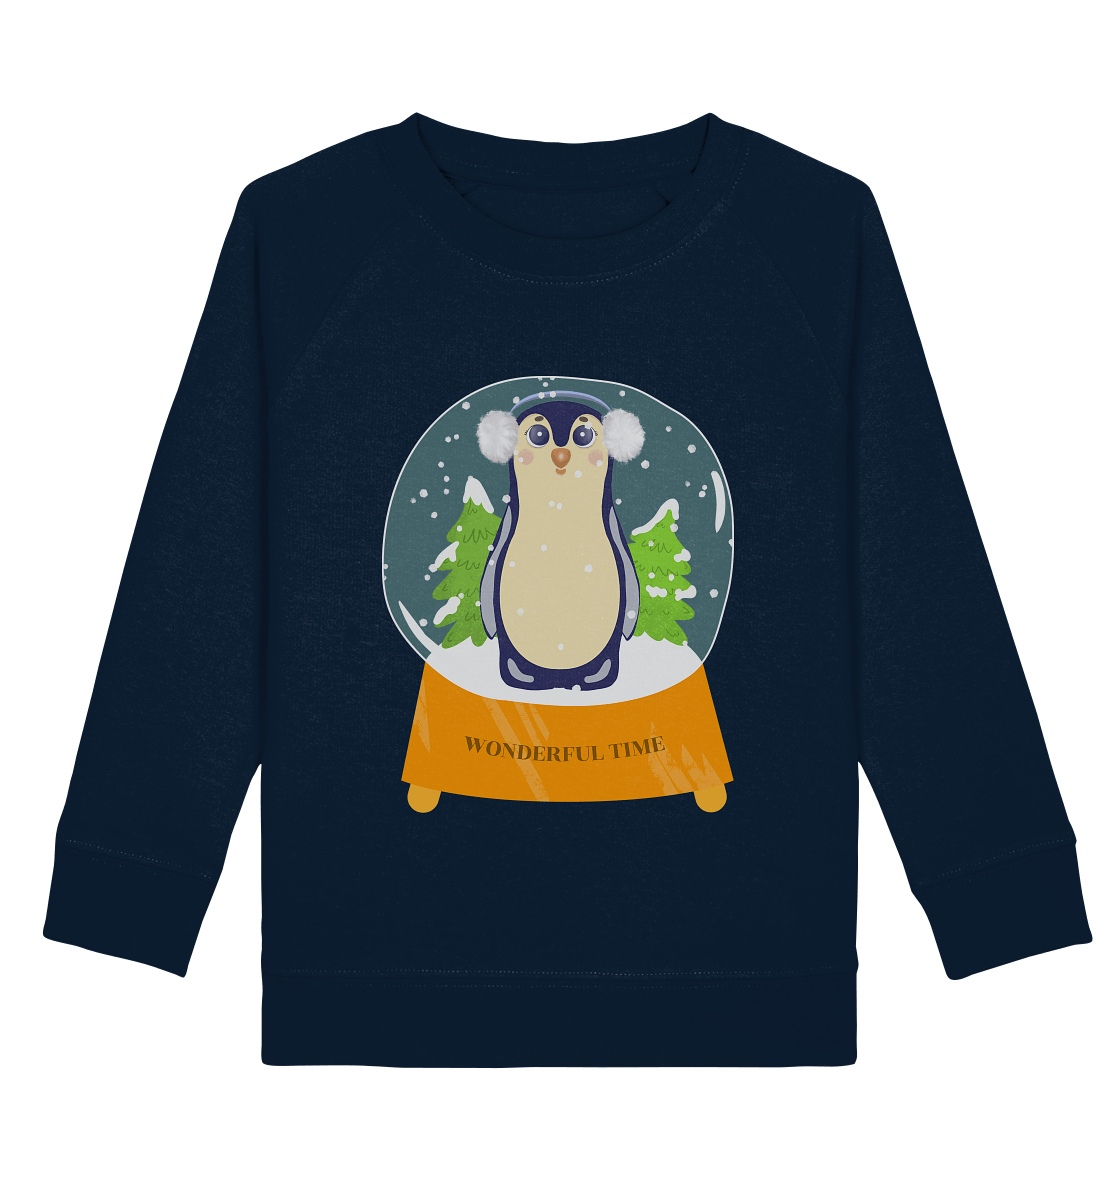 Pinguin Cartoon Kinder Sweatshirt in dunkel blau mit handgezeichneten Pinguin Cartoon in Glaskugel wonderful timen Sweatshirt in navy